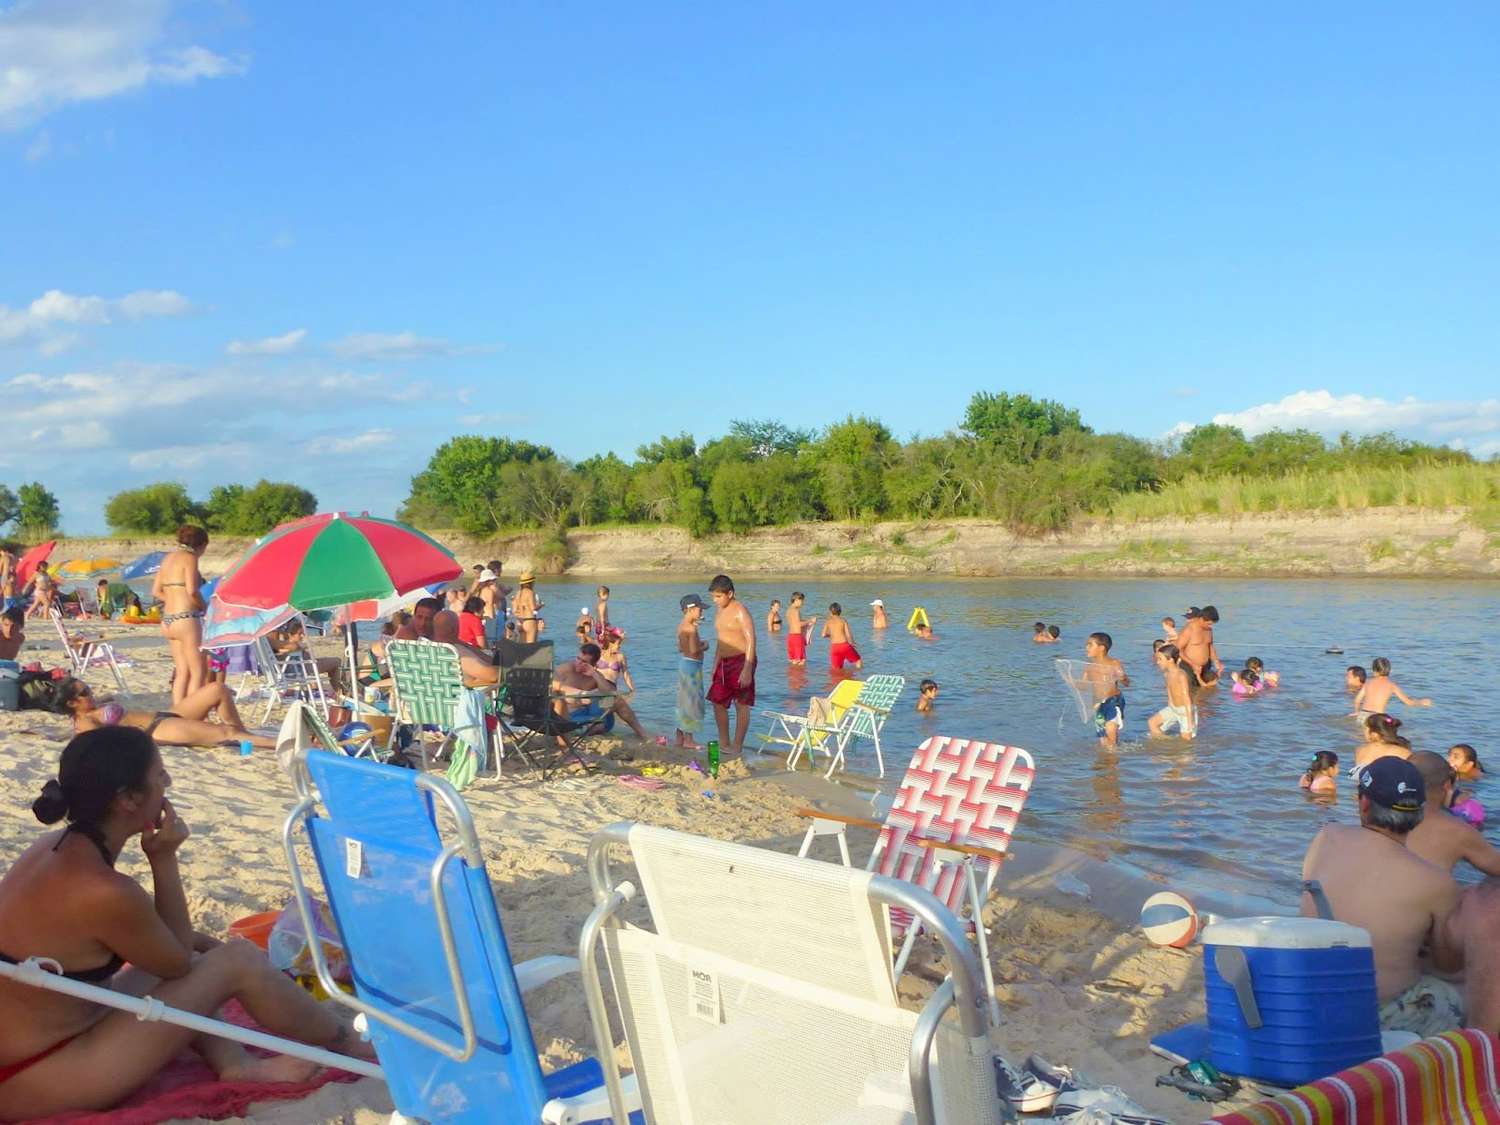 Al igual que otras ciudades, Gualeguay también debe implementar transporte público y gratuito a balnearios